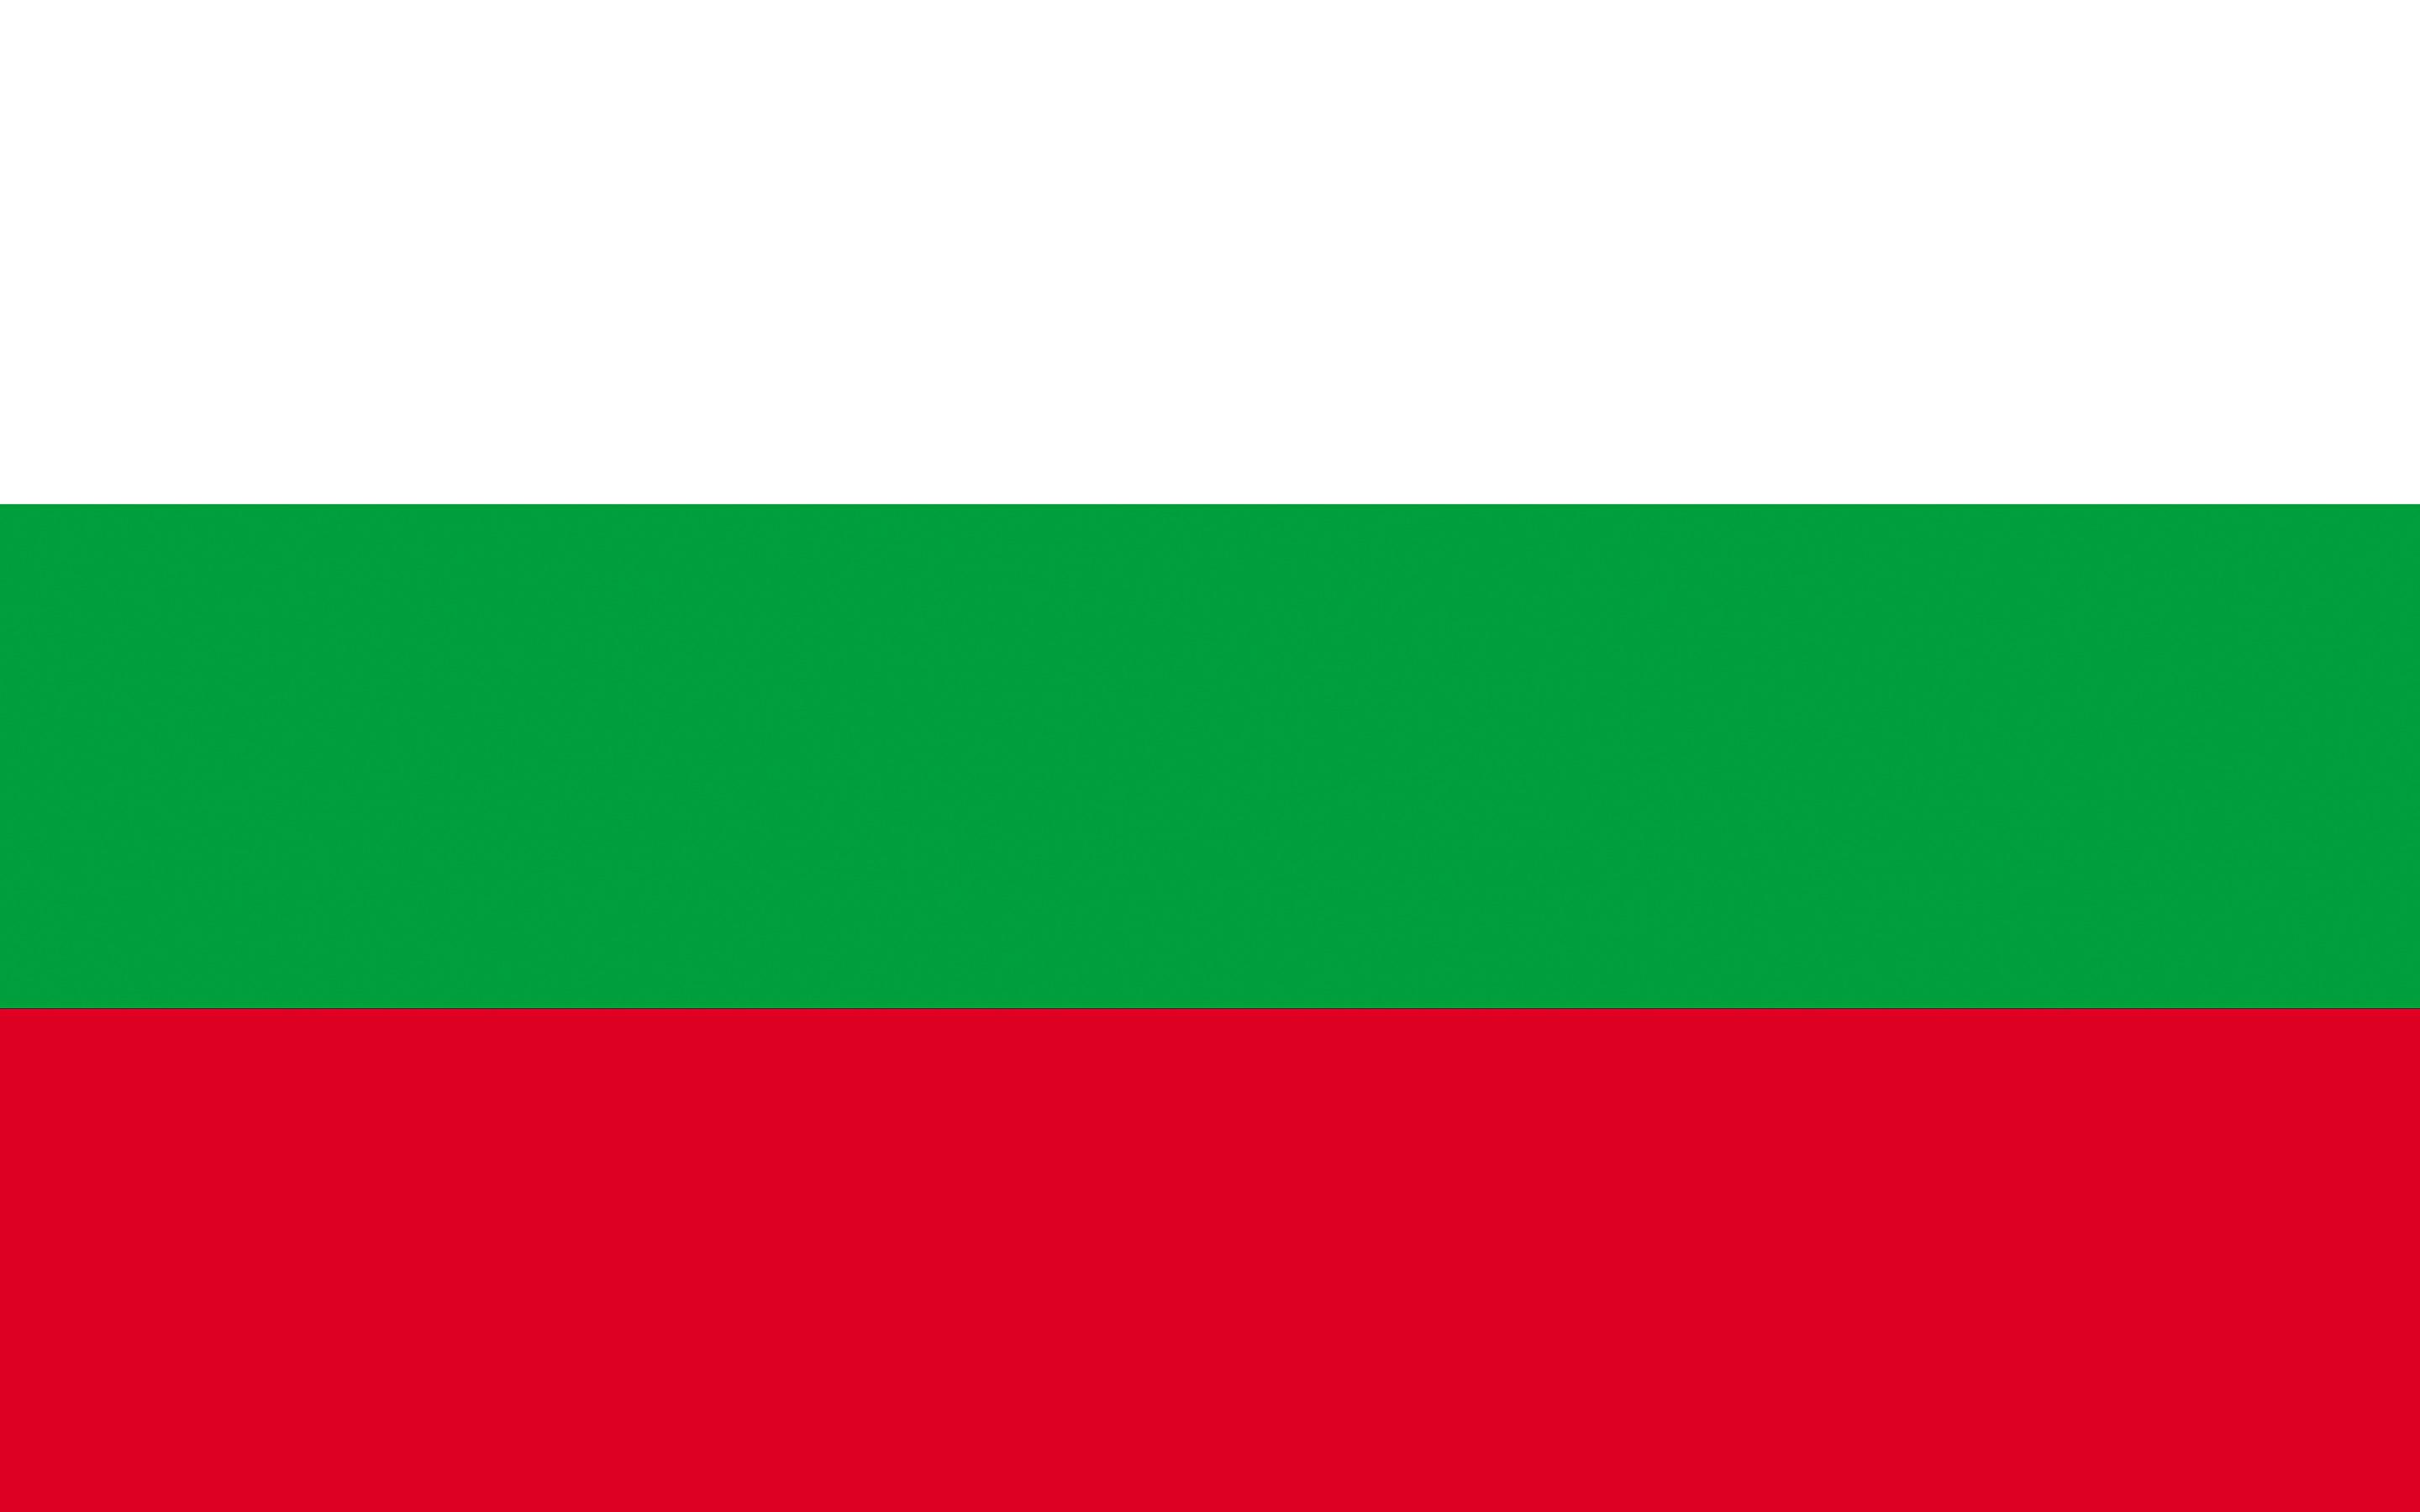 Image Bulgaria Flag Stripes 2880x1800